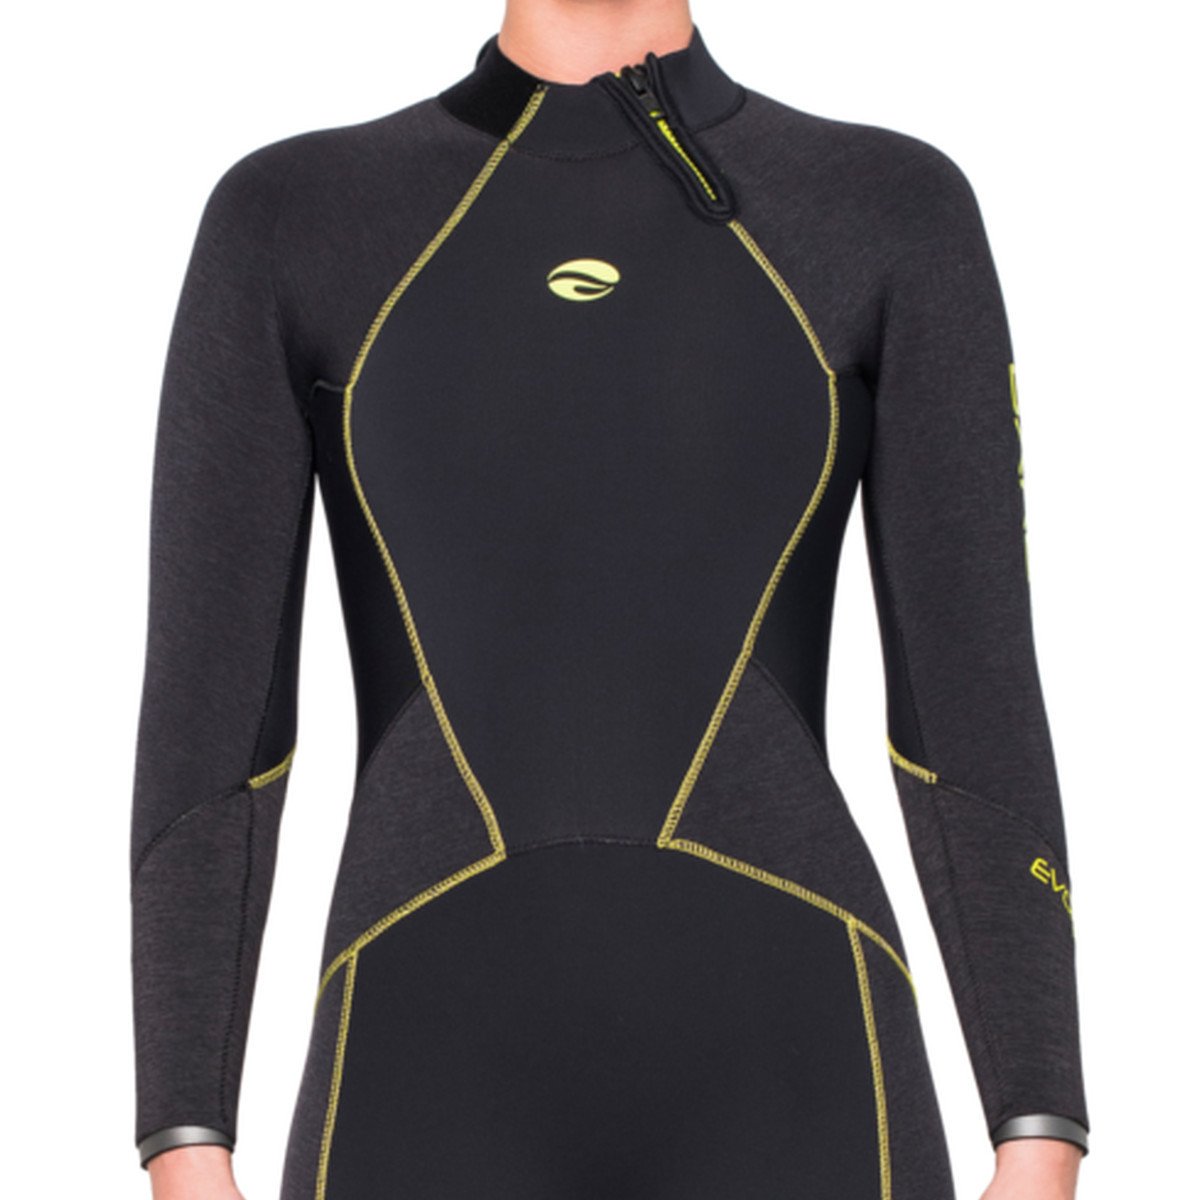 Evoke 5mm Full Wetsuit - Womens - Oyster Diving Equipment